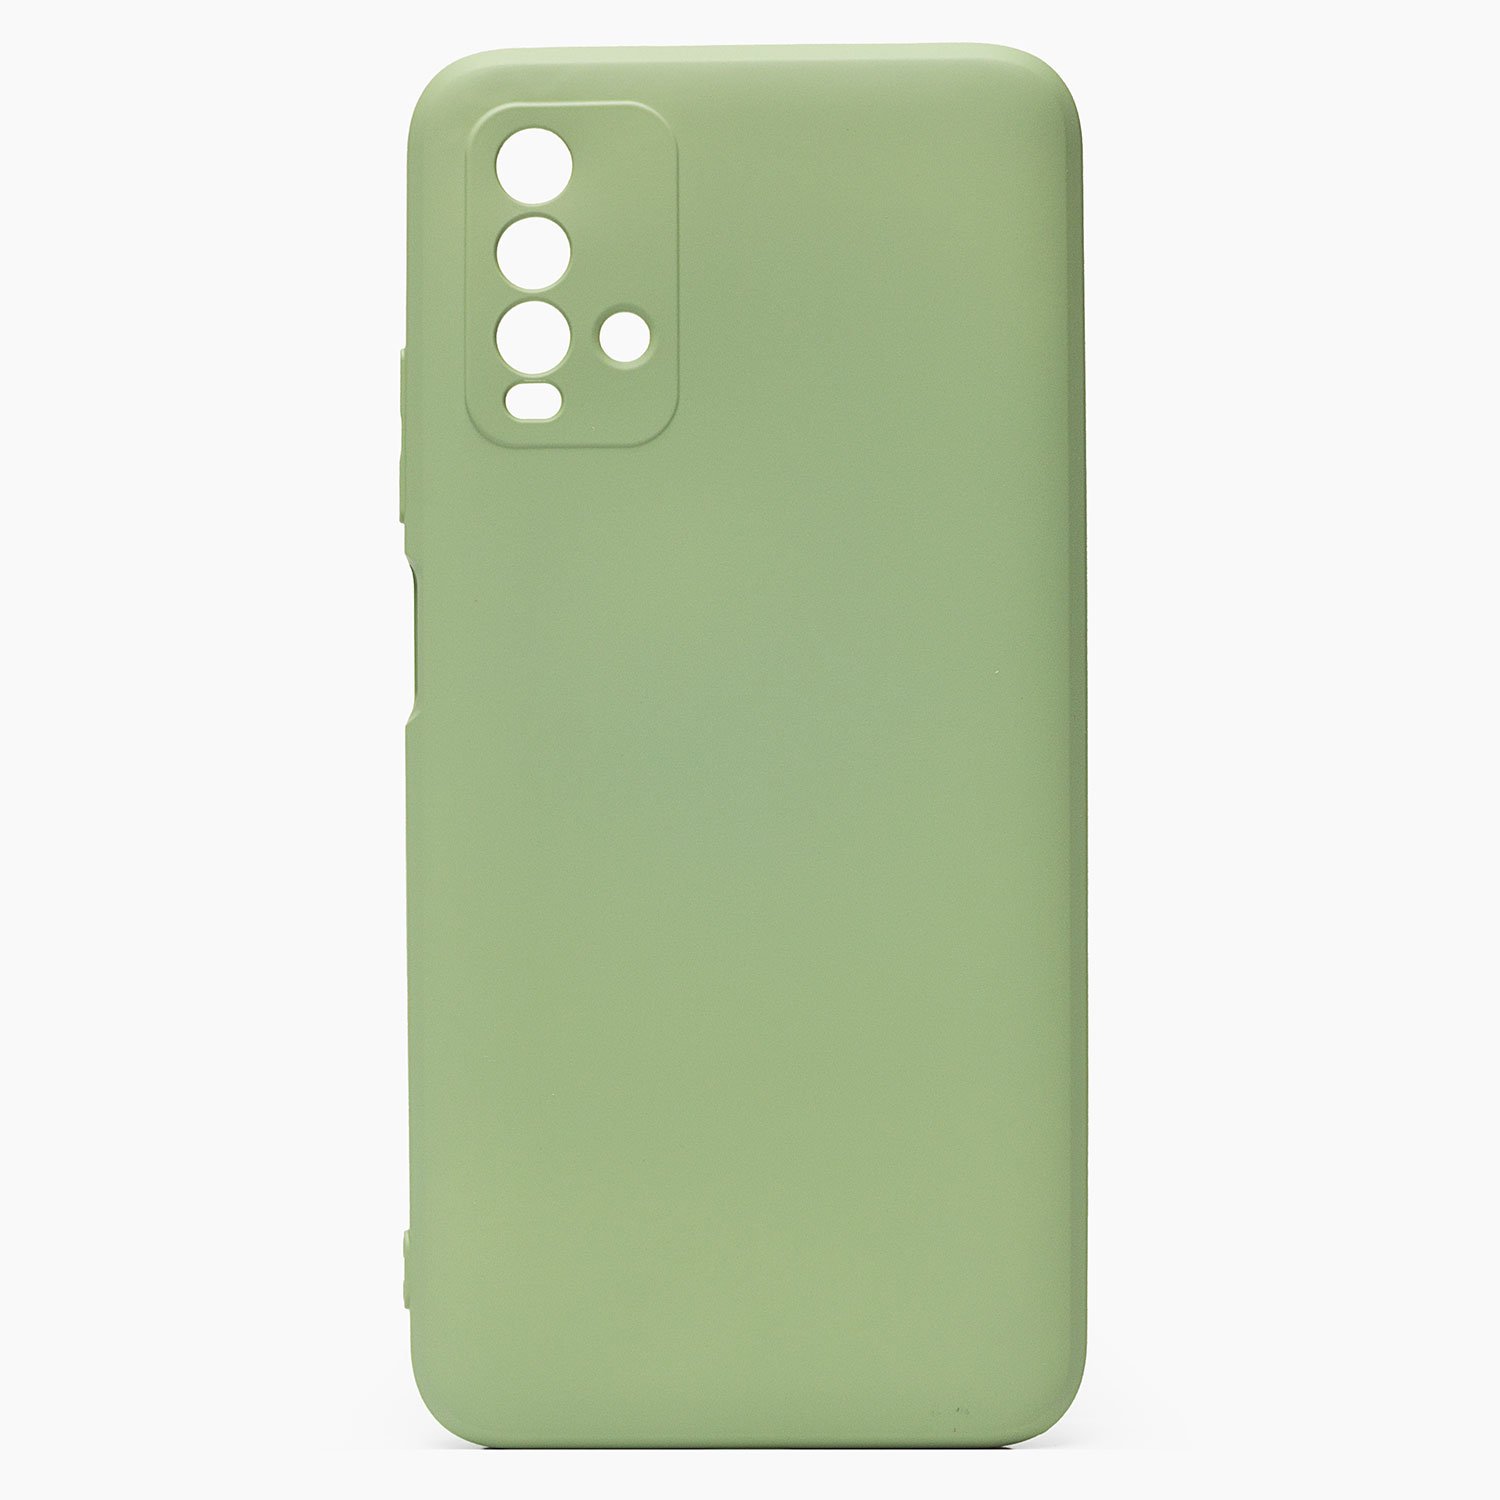 Чехол-накладка Activ Full Original Design для смартфона Xiaomi Redmi 9T, силикон, светло-зеленый (128925)